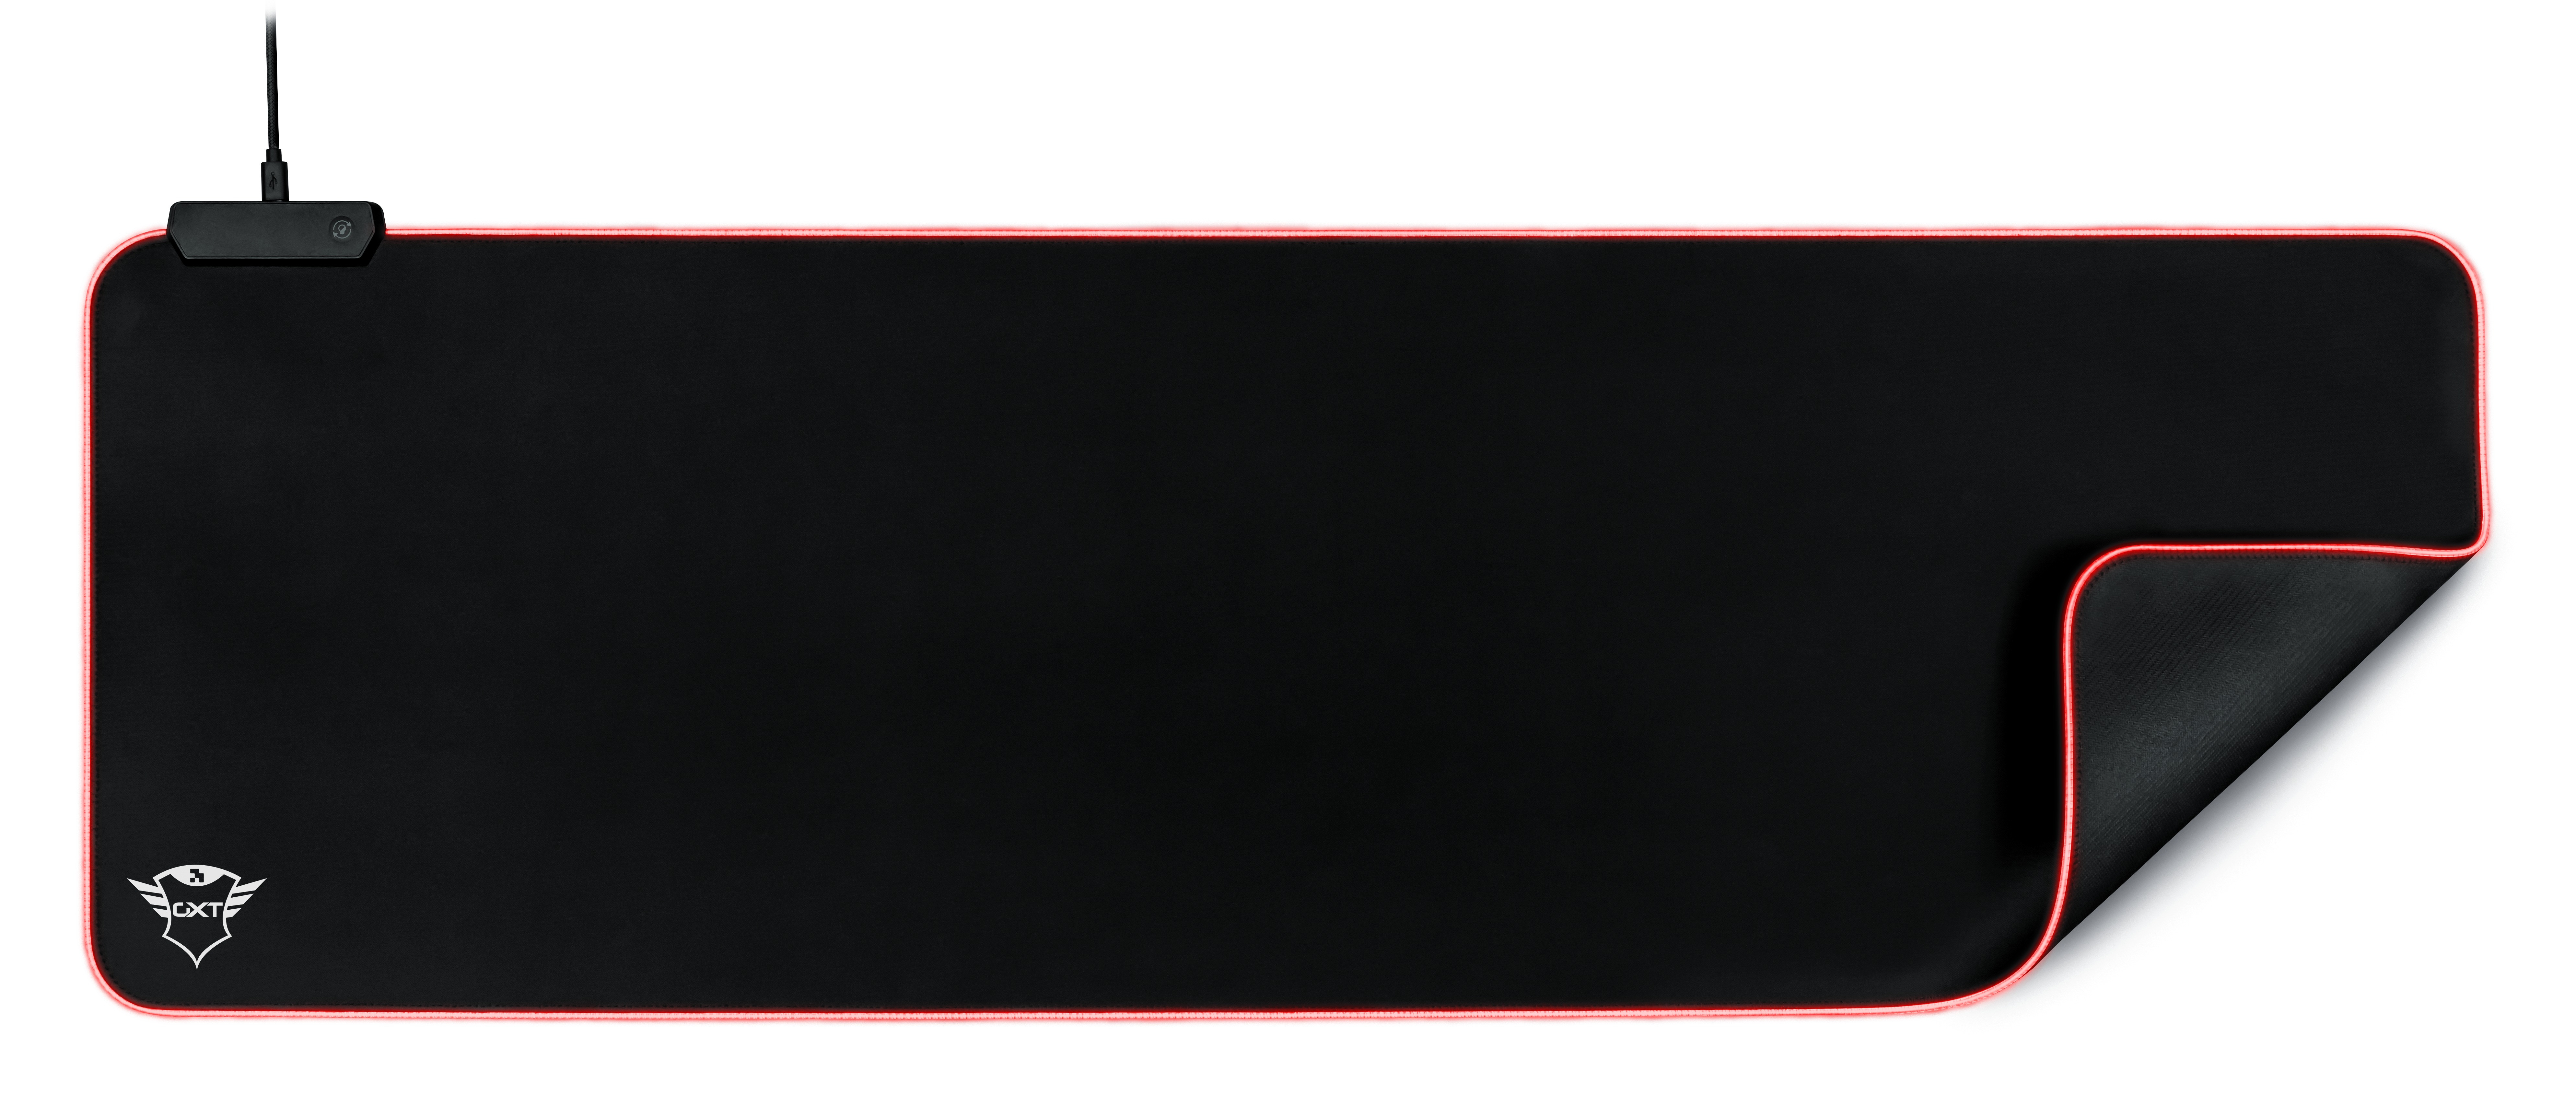 Trust GXT 764 Glide-Flex Muismat - Gaming - XXL - RGB - Illuminated Desktop accessoire Zwart